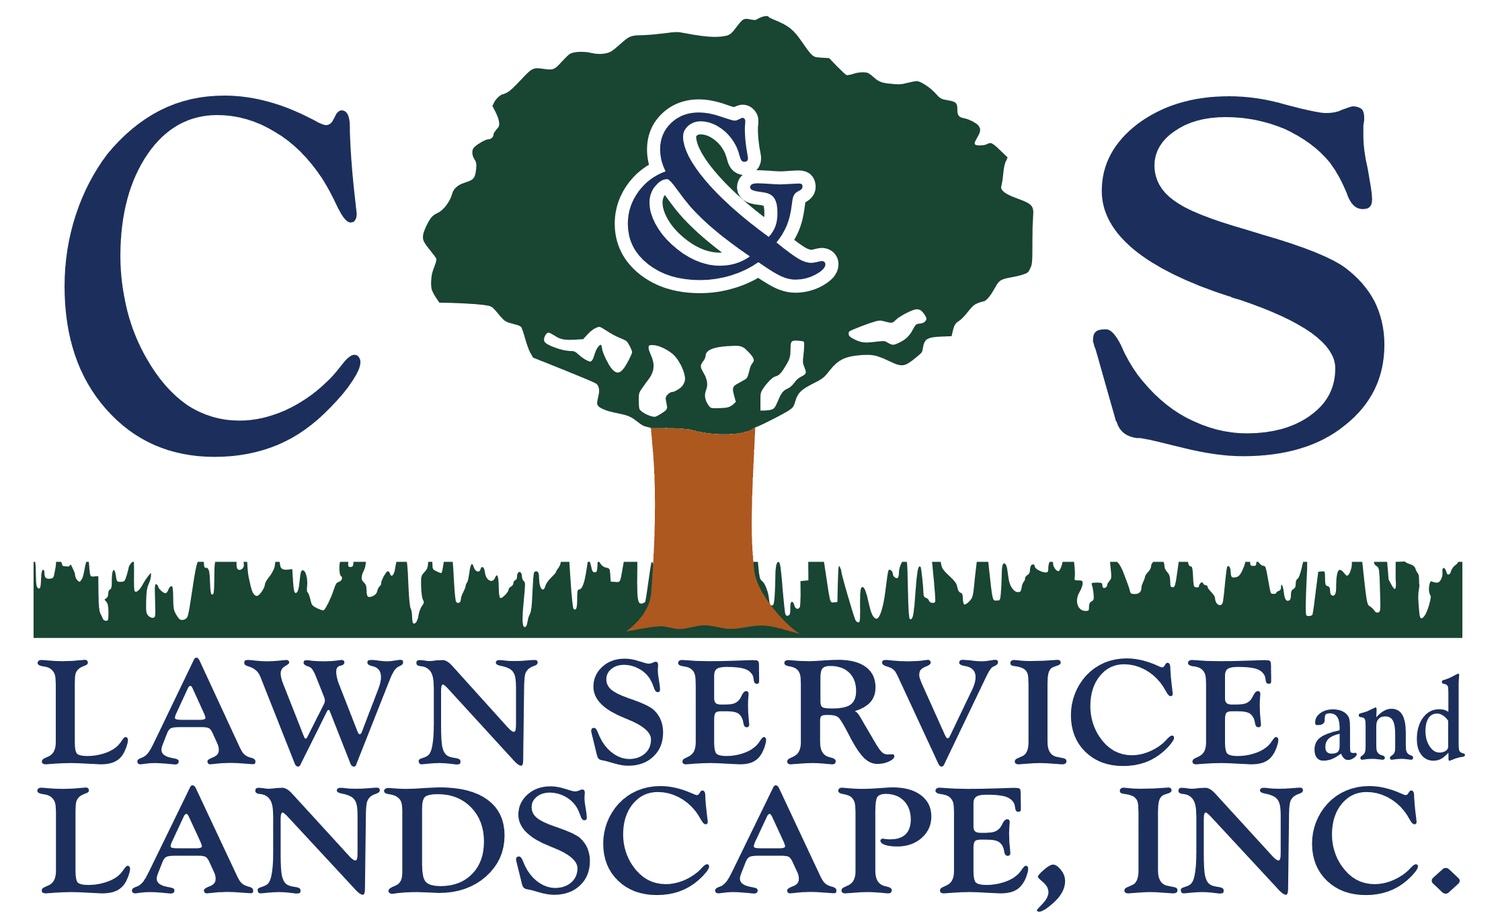 C&S Lawn Service & Landscape